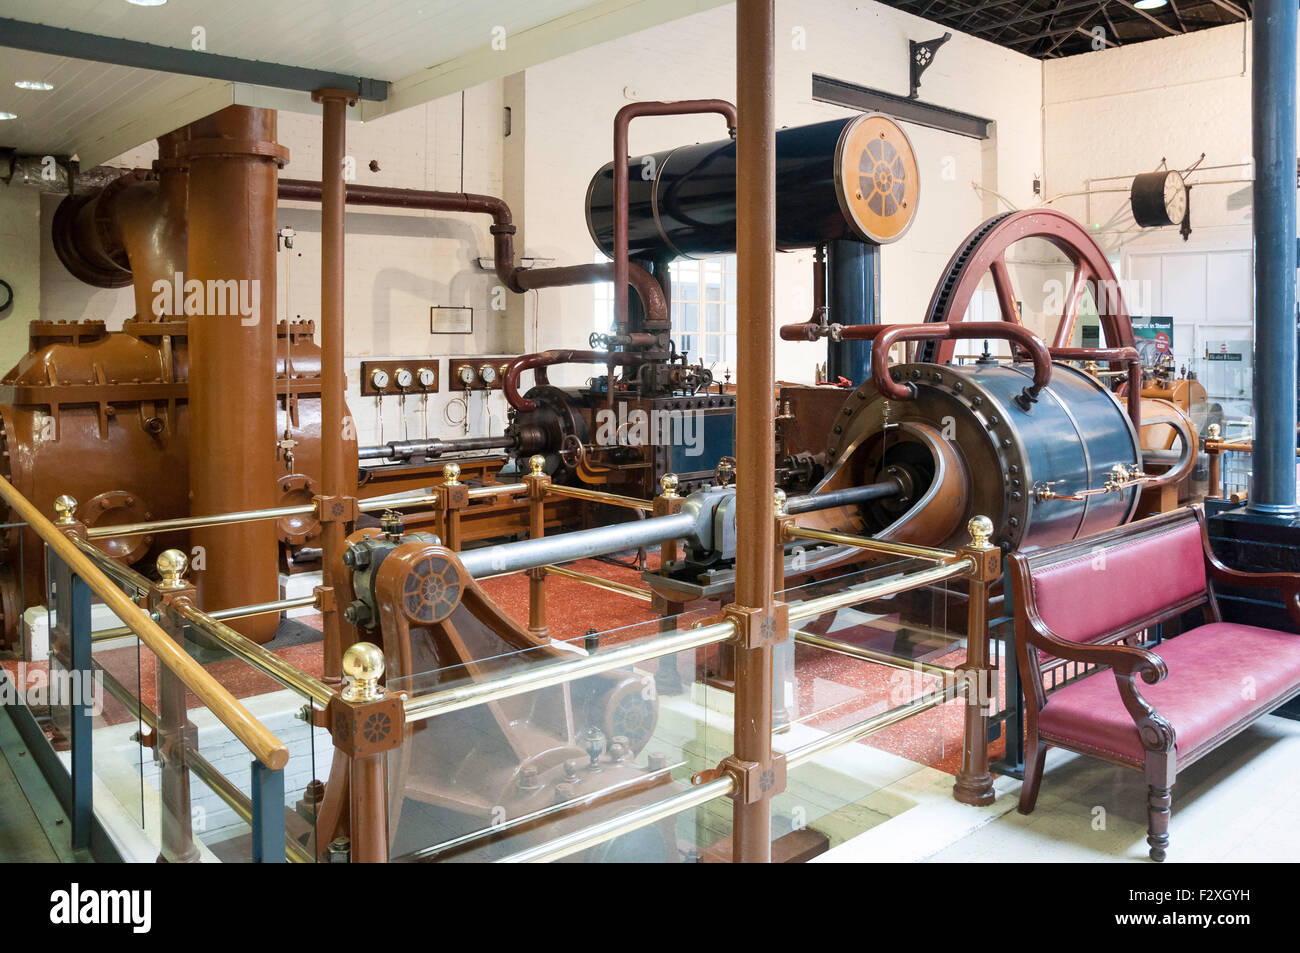 Das Watt Pumpe, London Museum von Wasser und Dampf, Grüner Drache Lane, Brentford, größere London, England, Vereinigtes Königreich Stockfoto